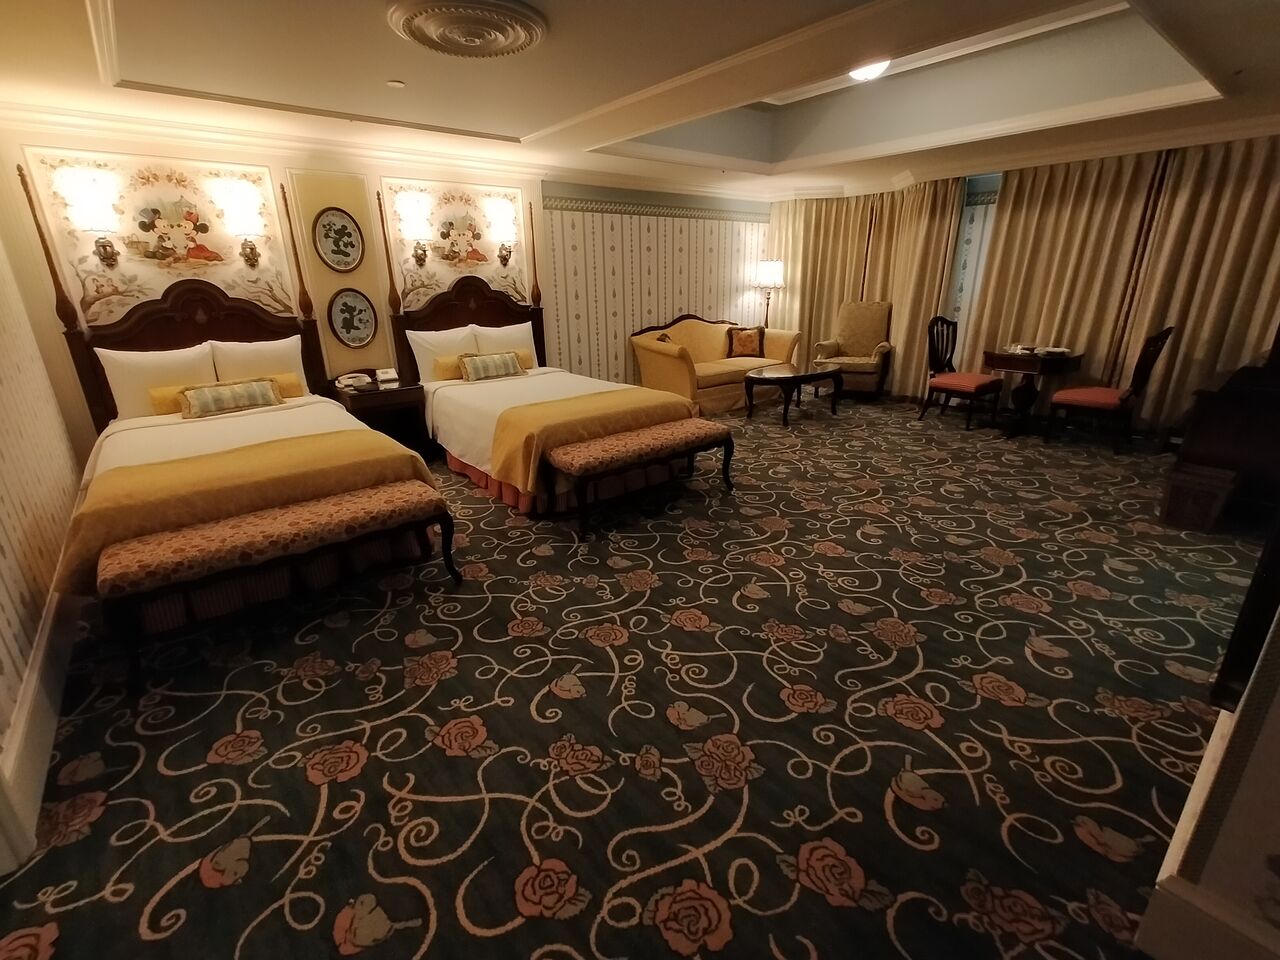 元ファミリールームが改装されたお部屋です ディズニーランドホテル 7月平日ホテルホッパーする三連泊その27 アラフィフ主婦のディズニー年パス日記